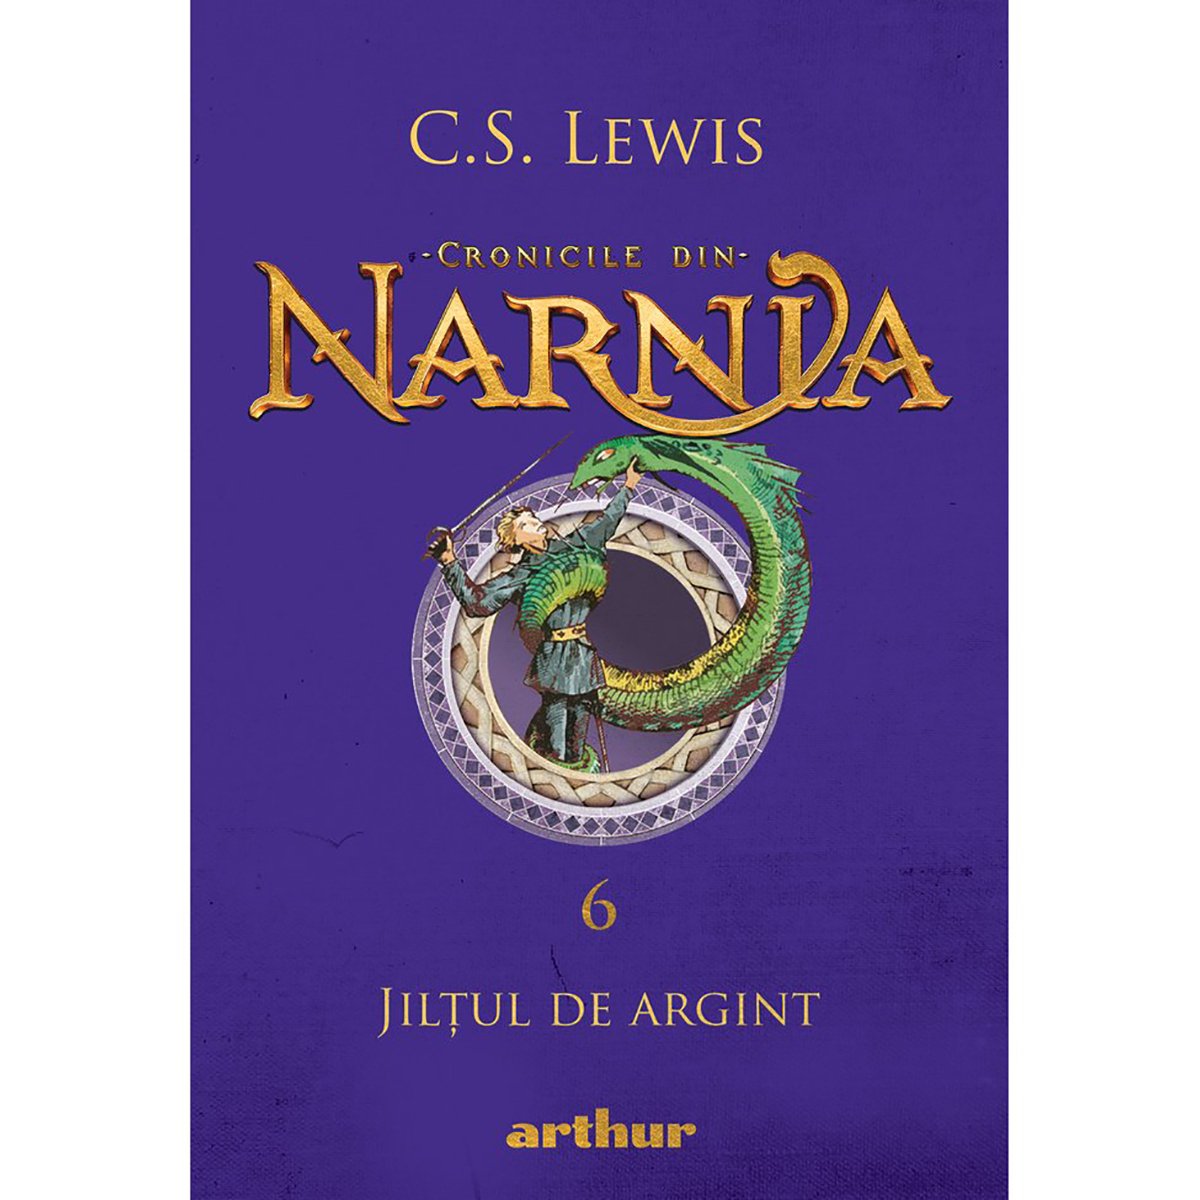 Cronicile din Narnia 6, Jiltul de argint, C.S. Lewis argint